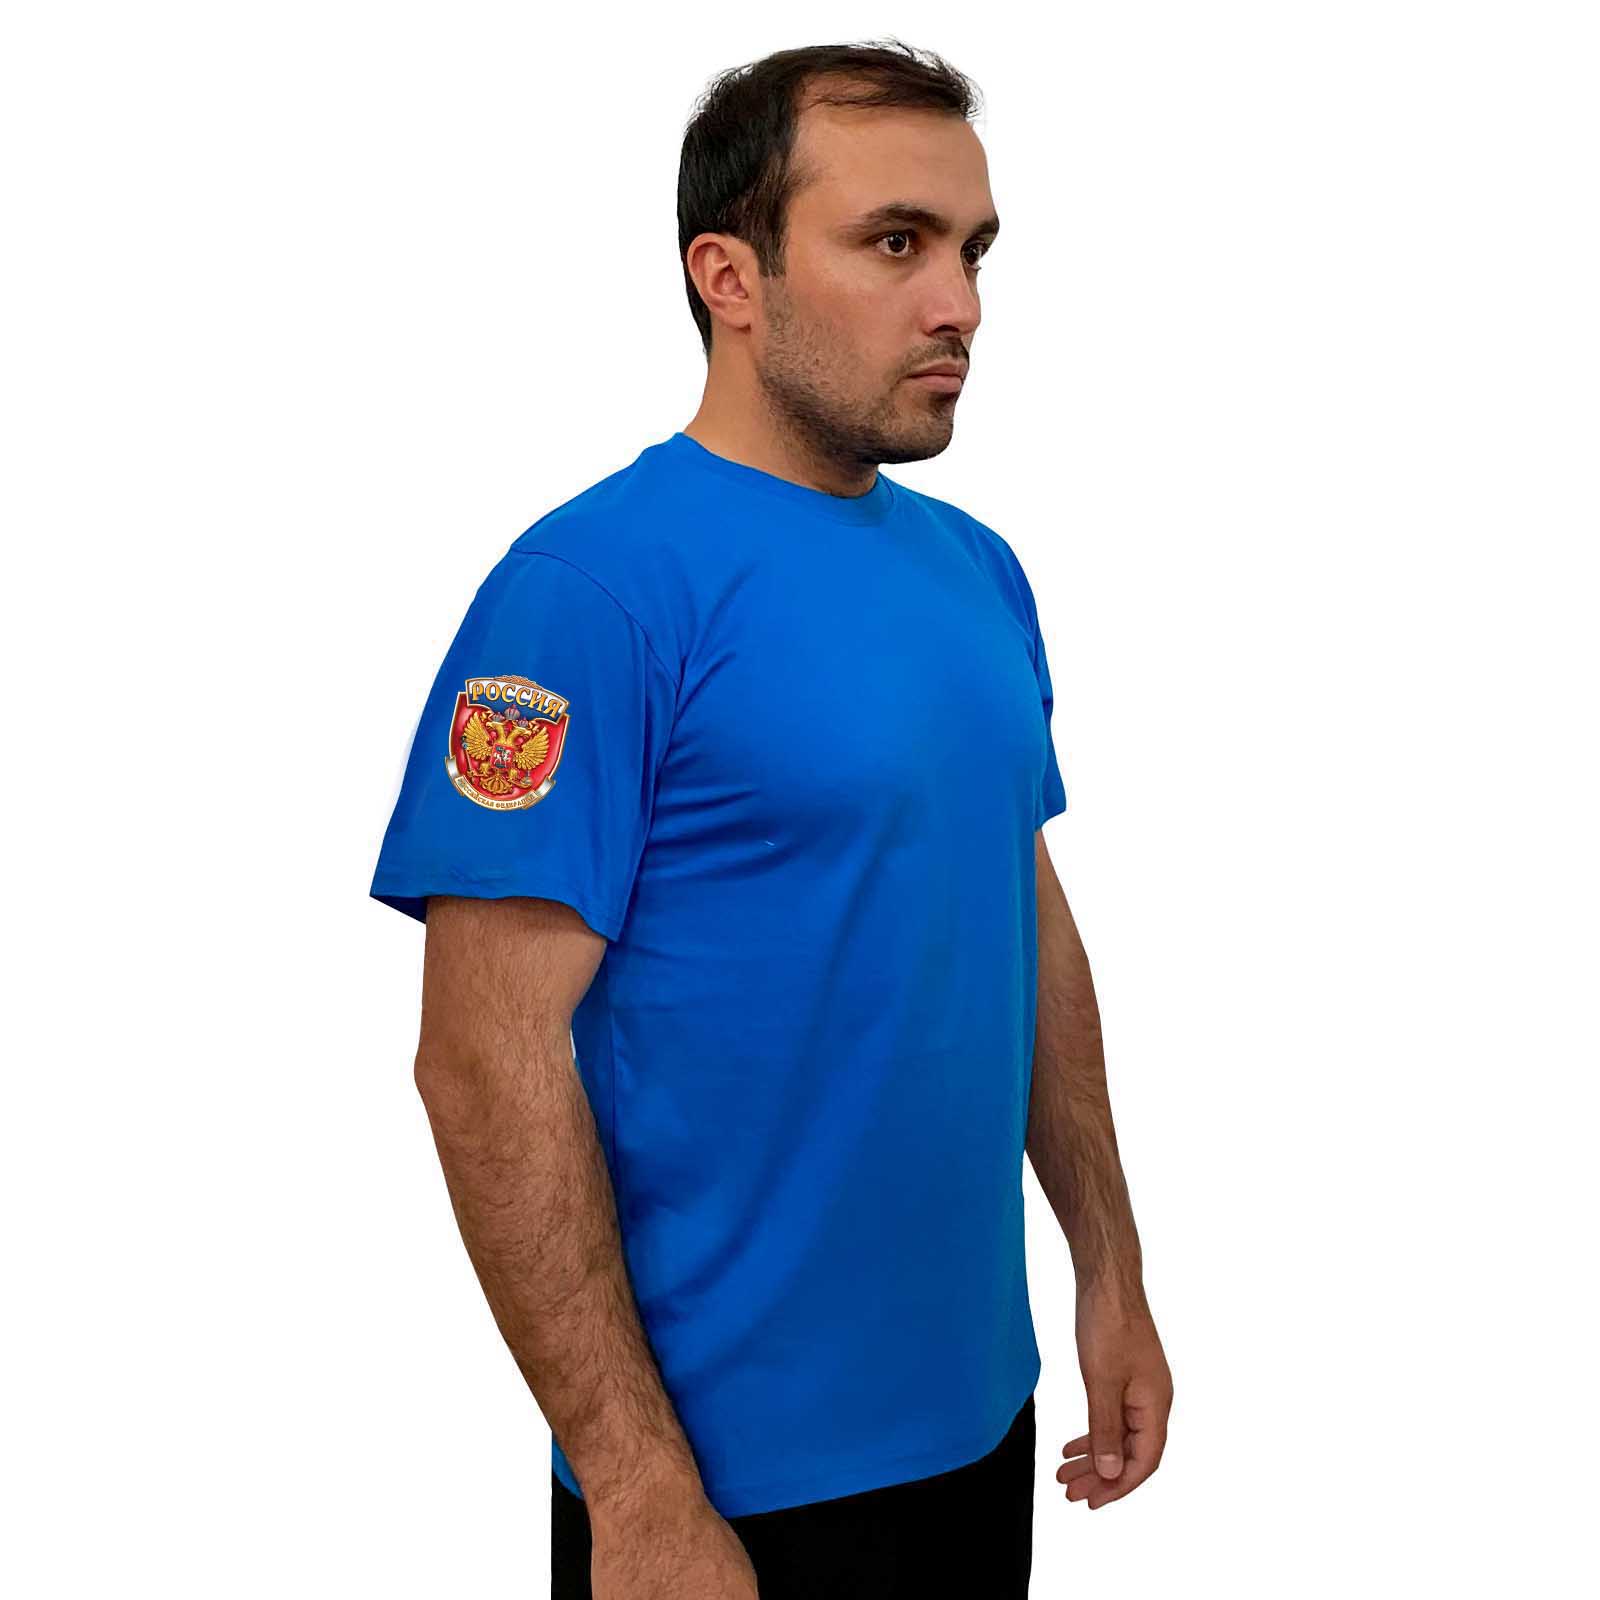 Васильковая футболка с термопринтом "Россия" на рукаве